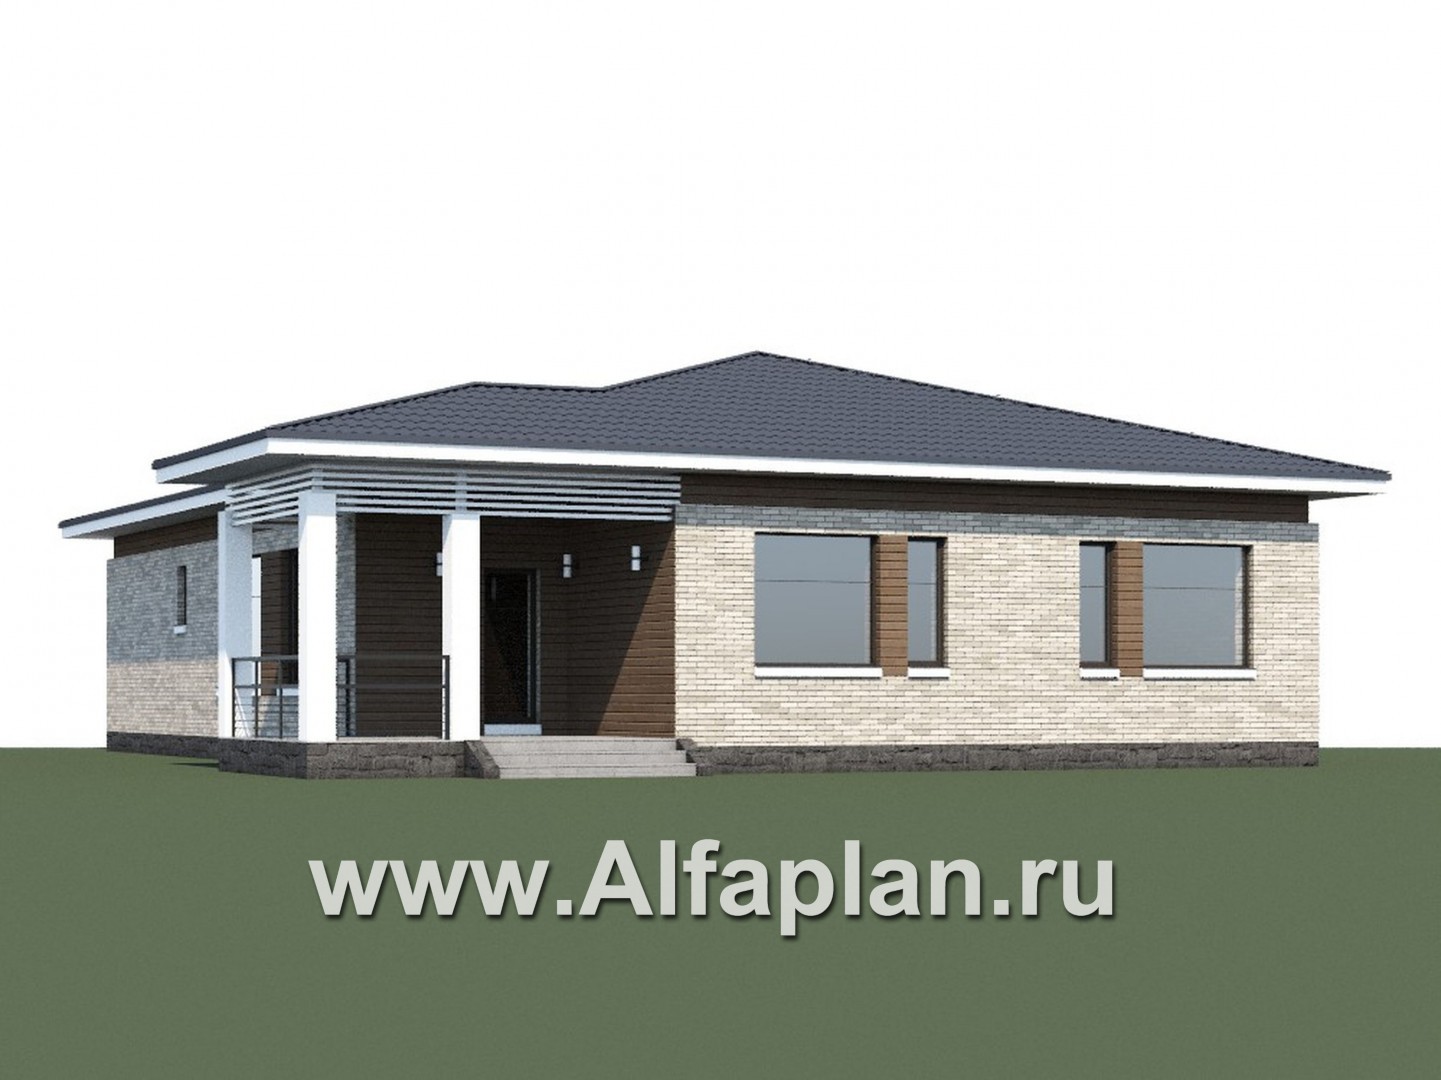 Проекты домов Альфаплан - «Днестр» - одноэтажный коттедж с бильярдной и сауной - дополнительное изображение №1